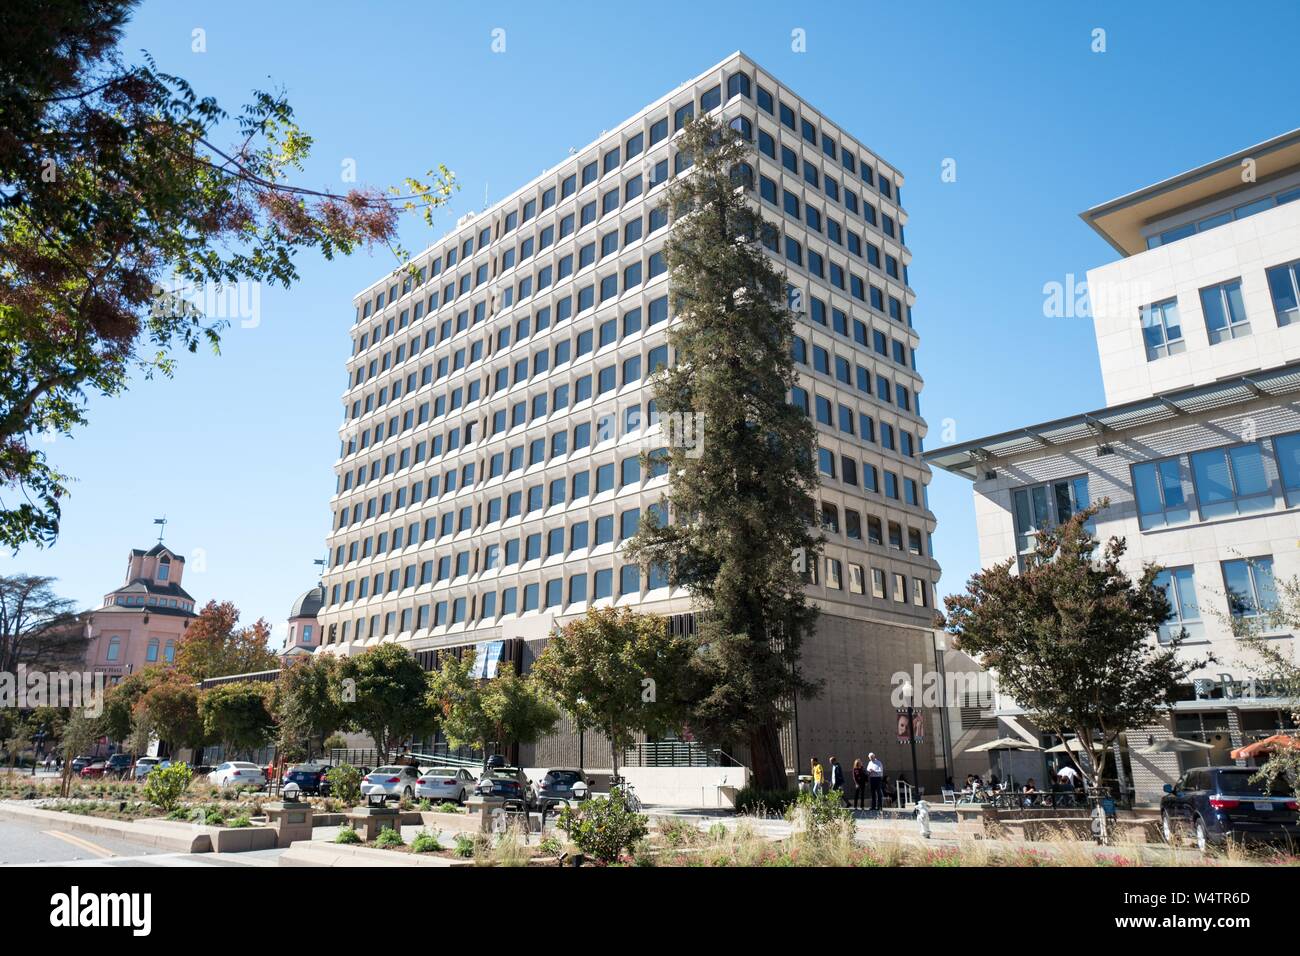 Die volle Länge von 444 Castro Street, einem ikonischen Bürogebäude Gehäuse Technologie Unternehmen im Silicon Valley Stadt Mountain View, Kalifornien; Mieten für eine Etage im Gebäude oft mehr als 100 $ 000 pro Monat, 28. Oktober 2018. () Stockfoto